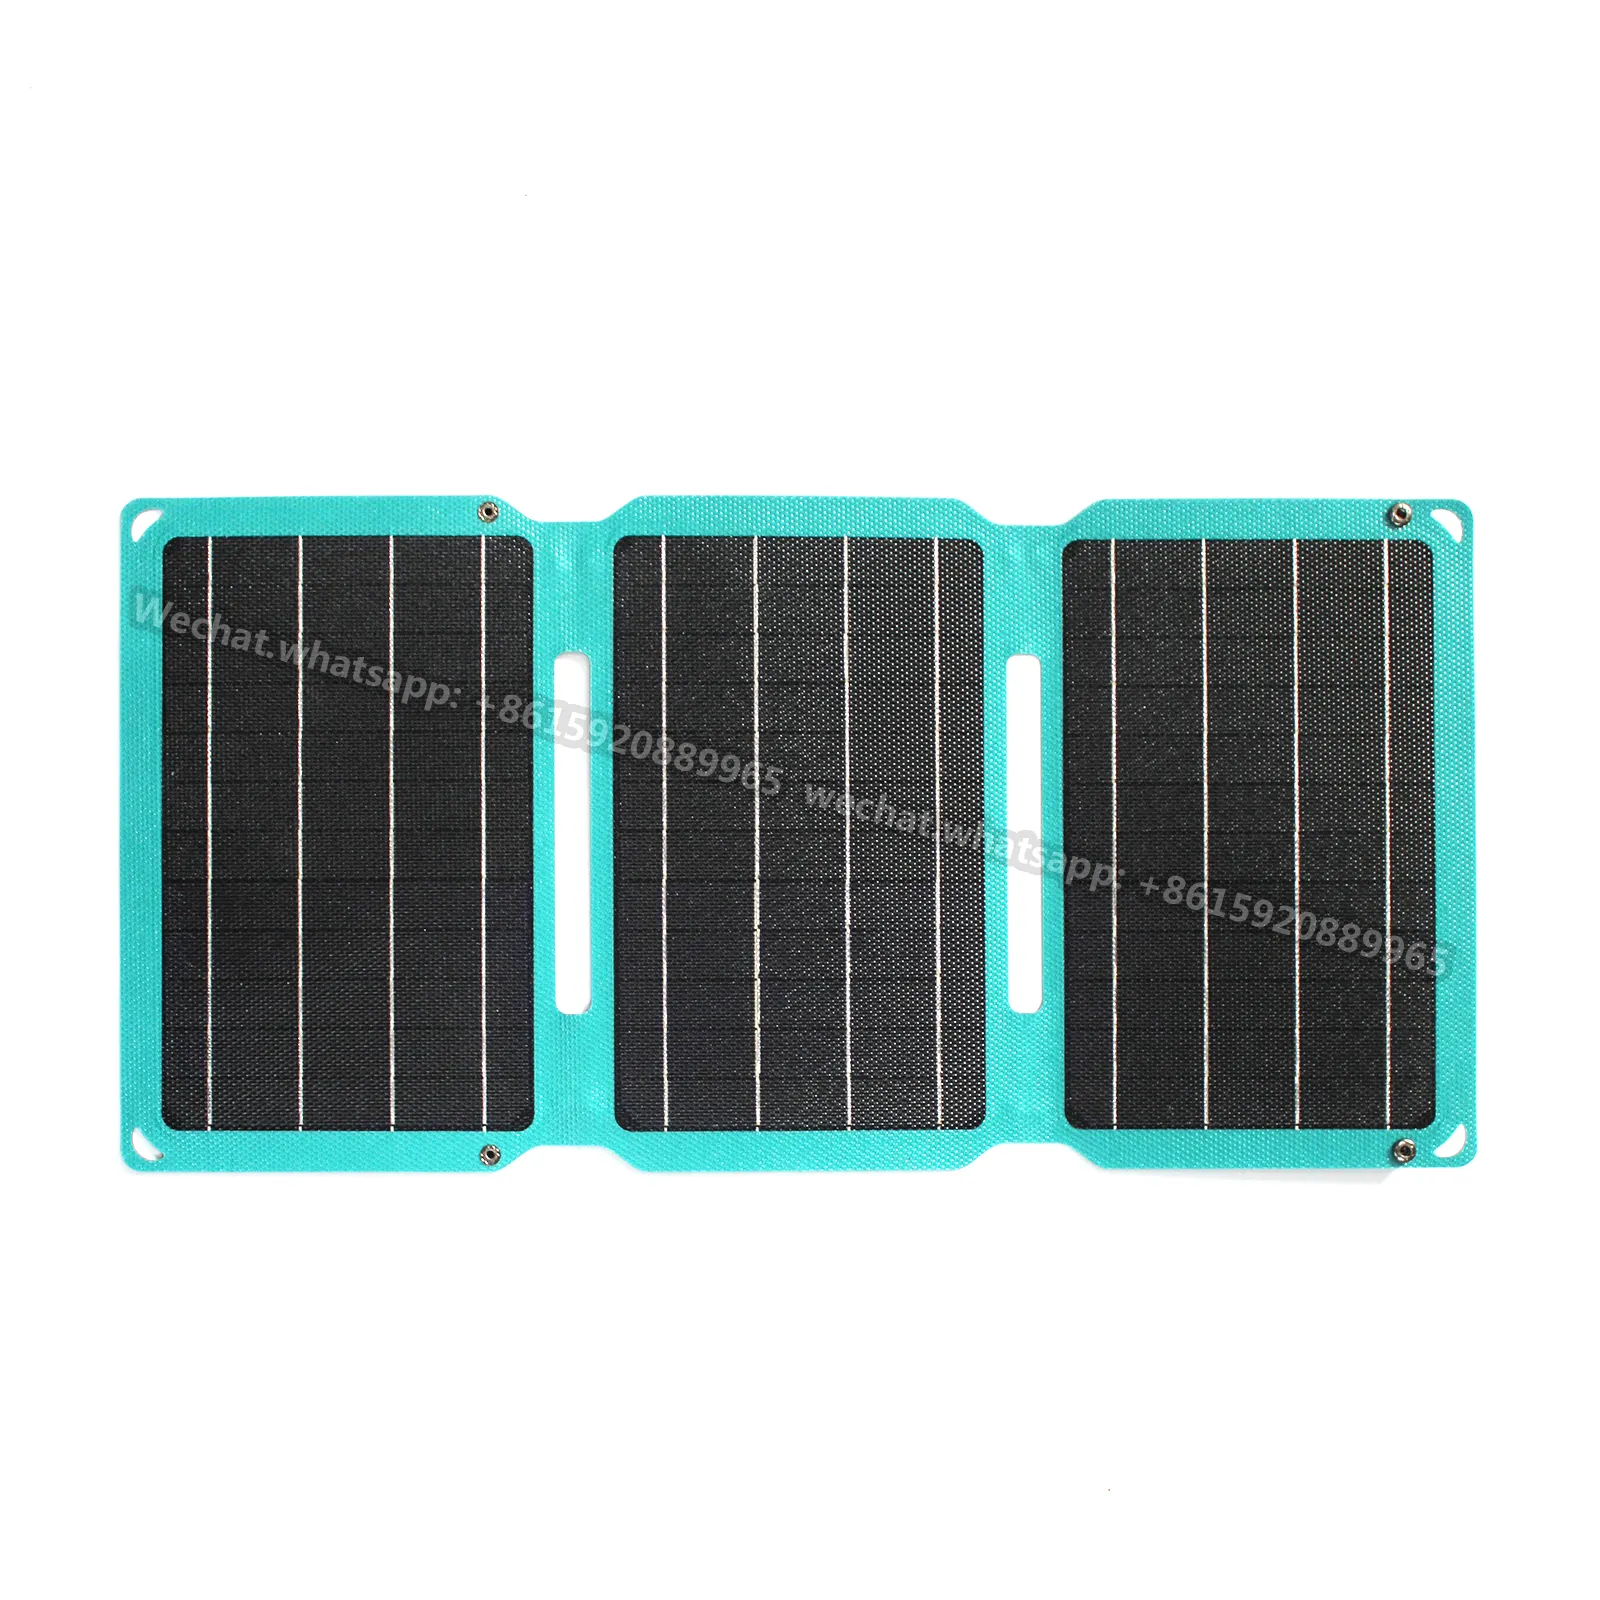 3 peças de 21w painel solar, carregamento sem fio usb de alta eficiência dobrável bolsa solar flex painel solar